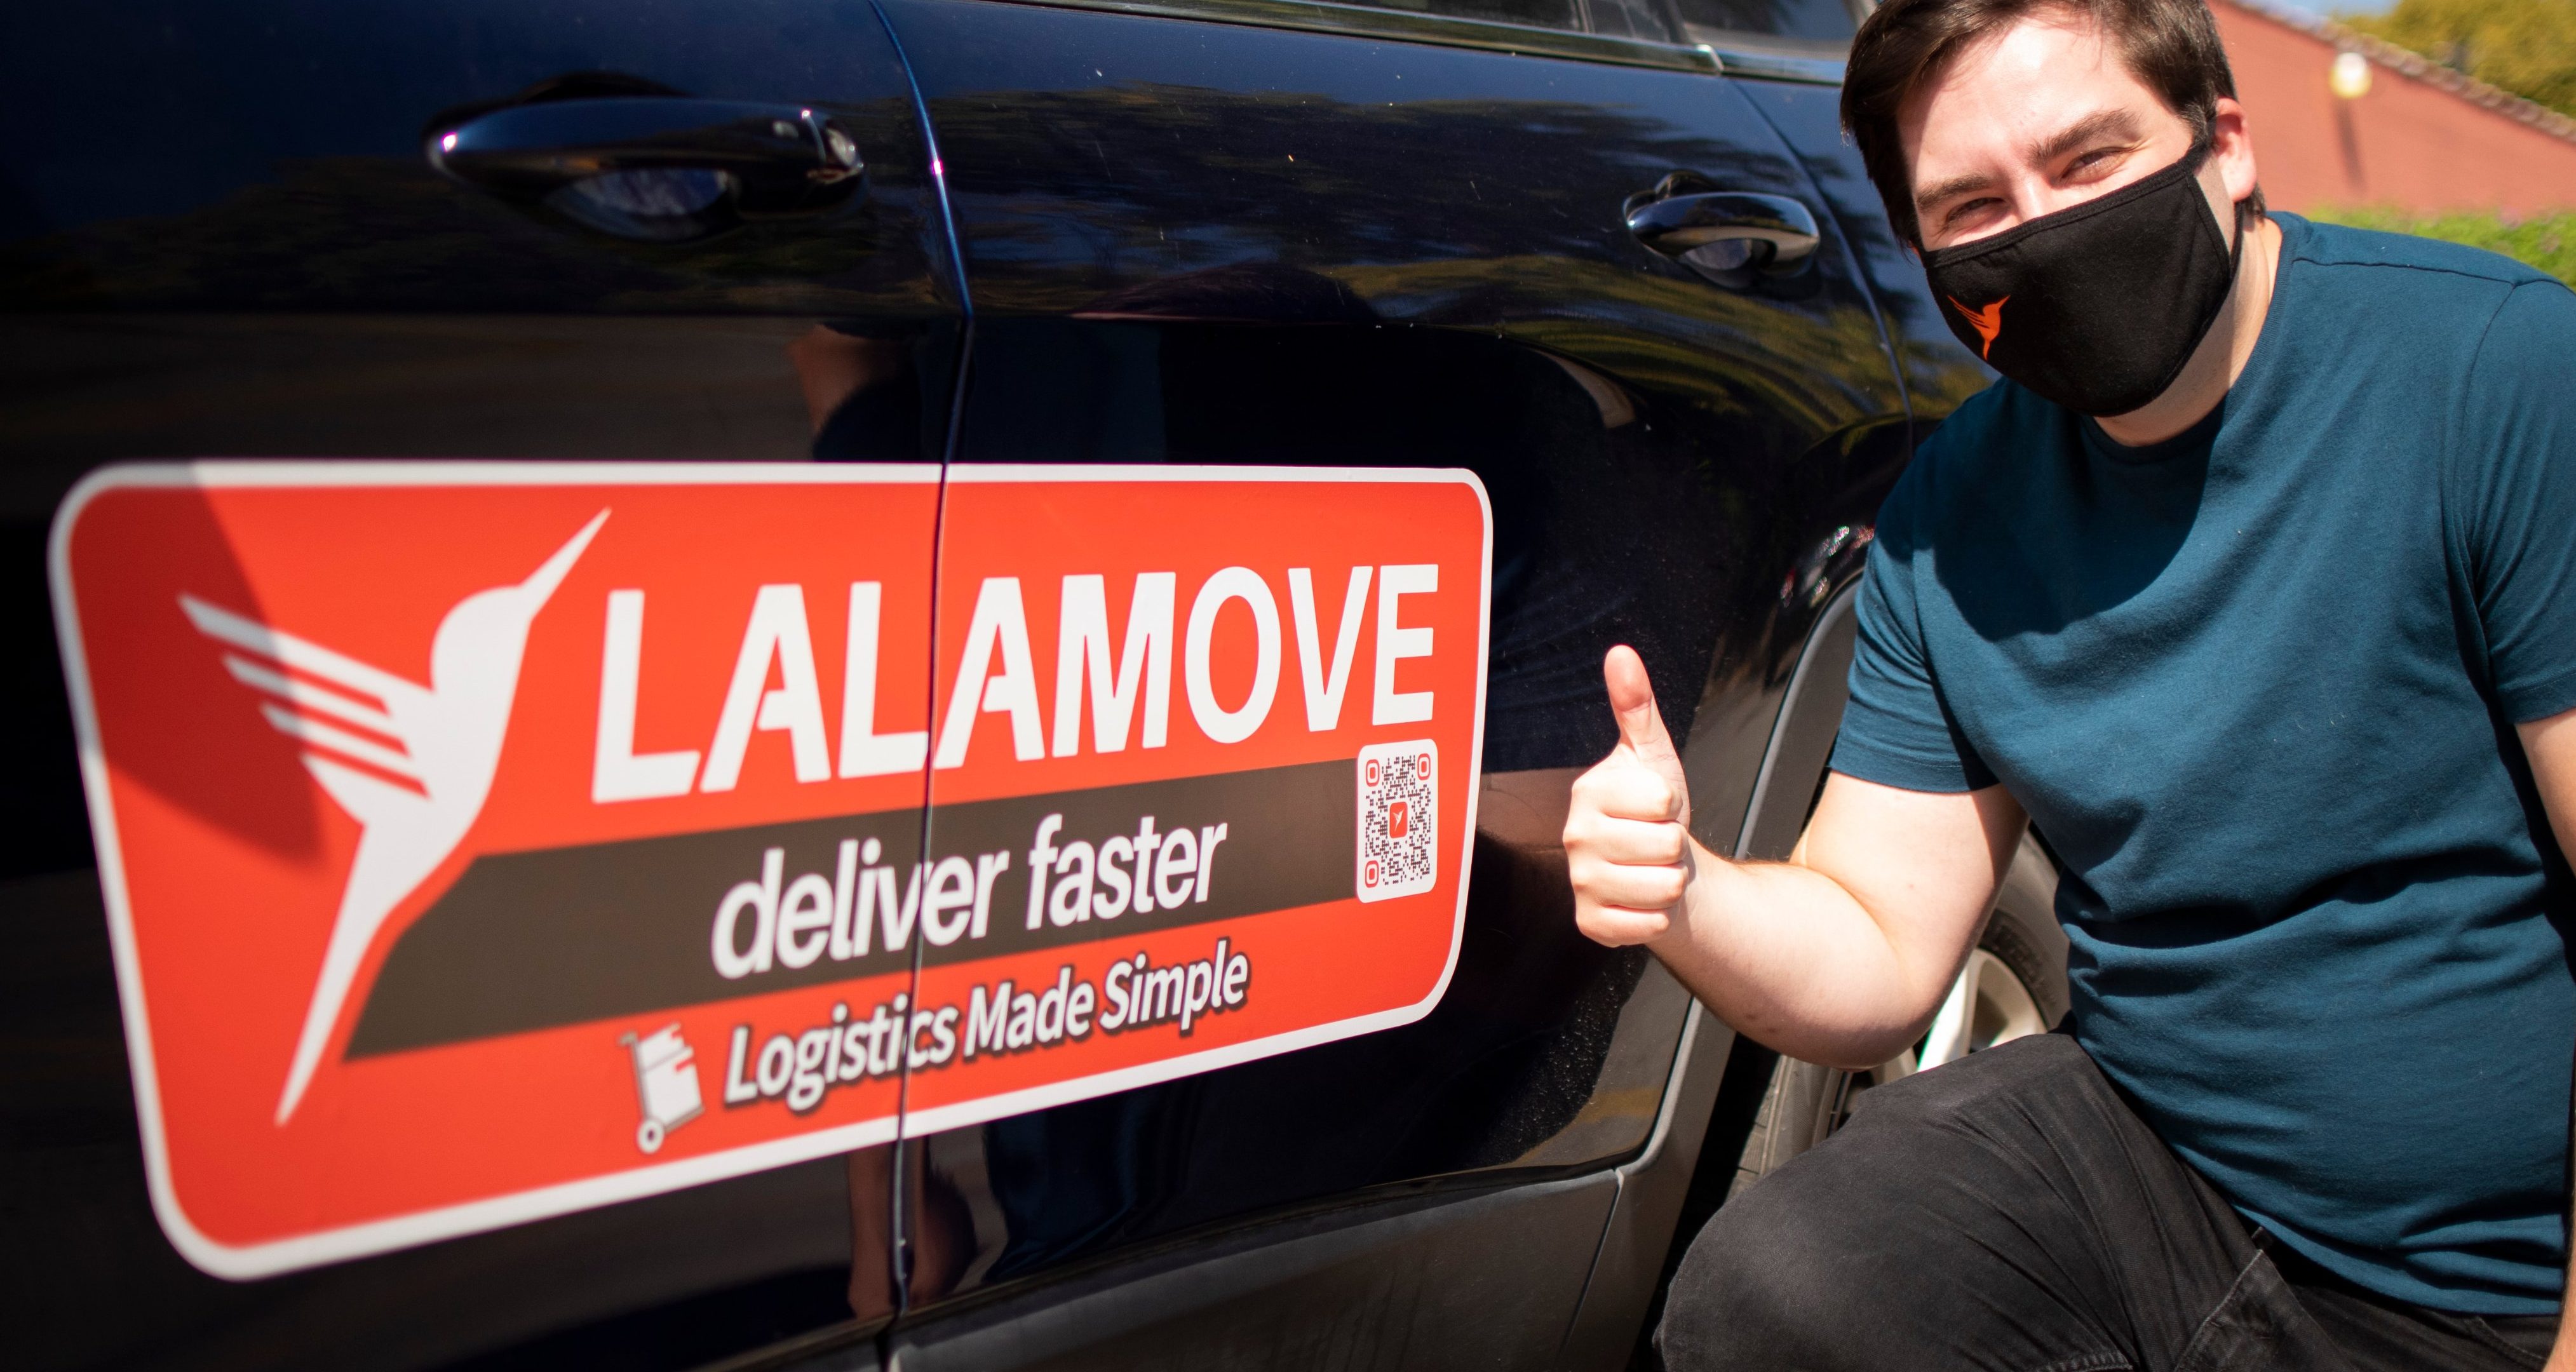 Customer service lalamove